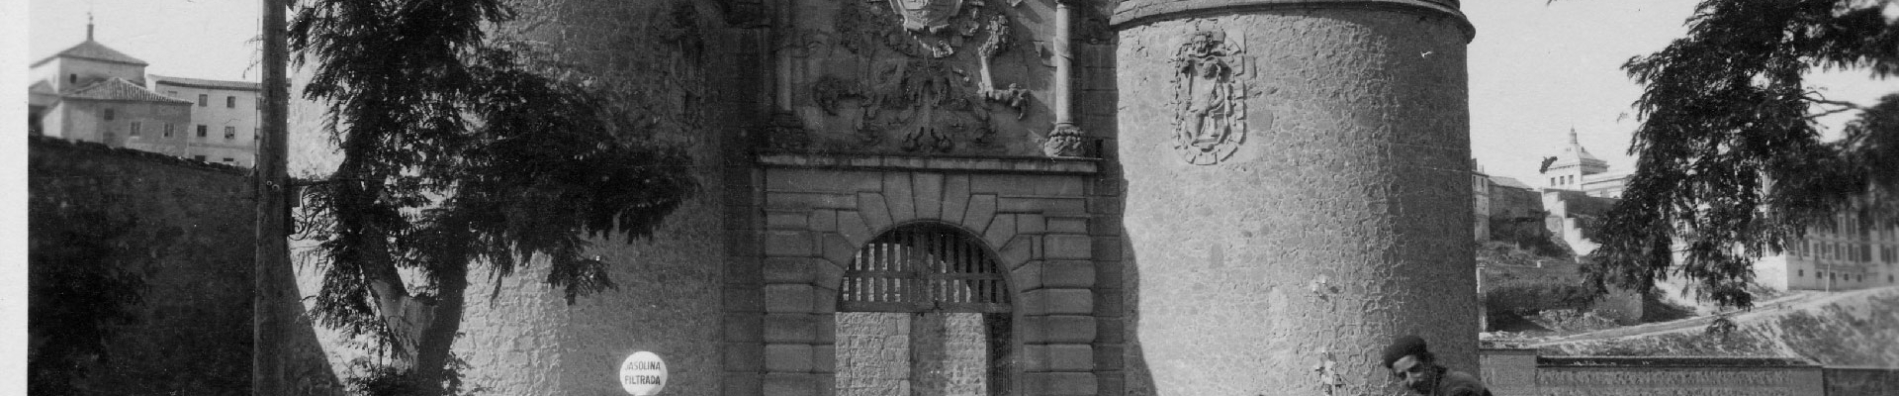 Puerta de Bisagra en Toledo, (Fondo Rodríguez, AHP Toledo)